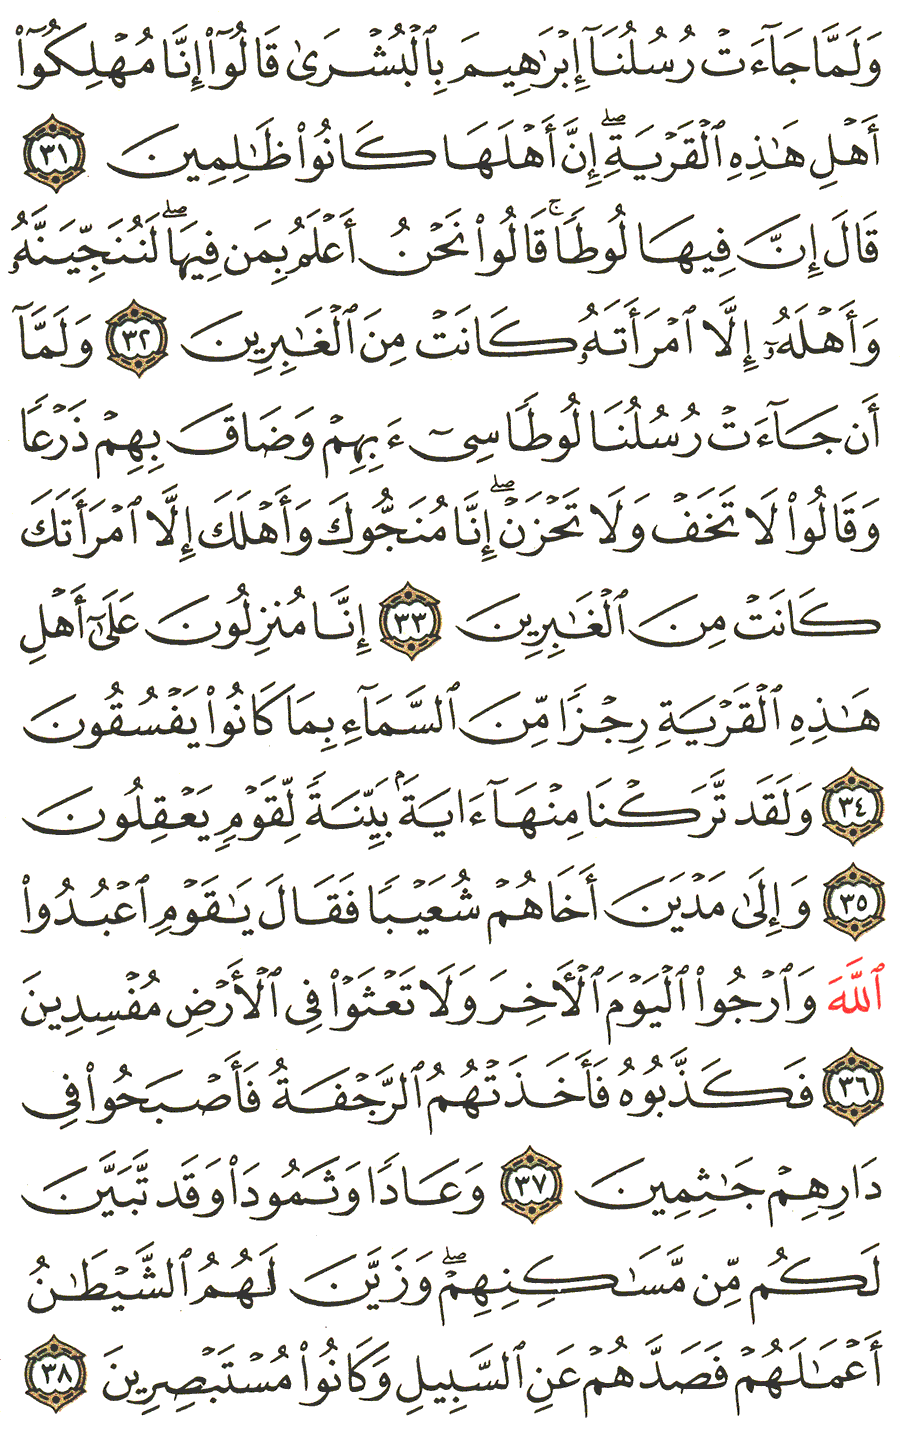 الصفحة 400 من القرآن الكريم